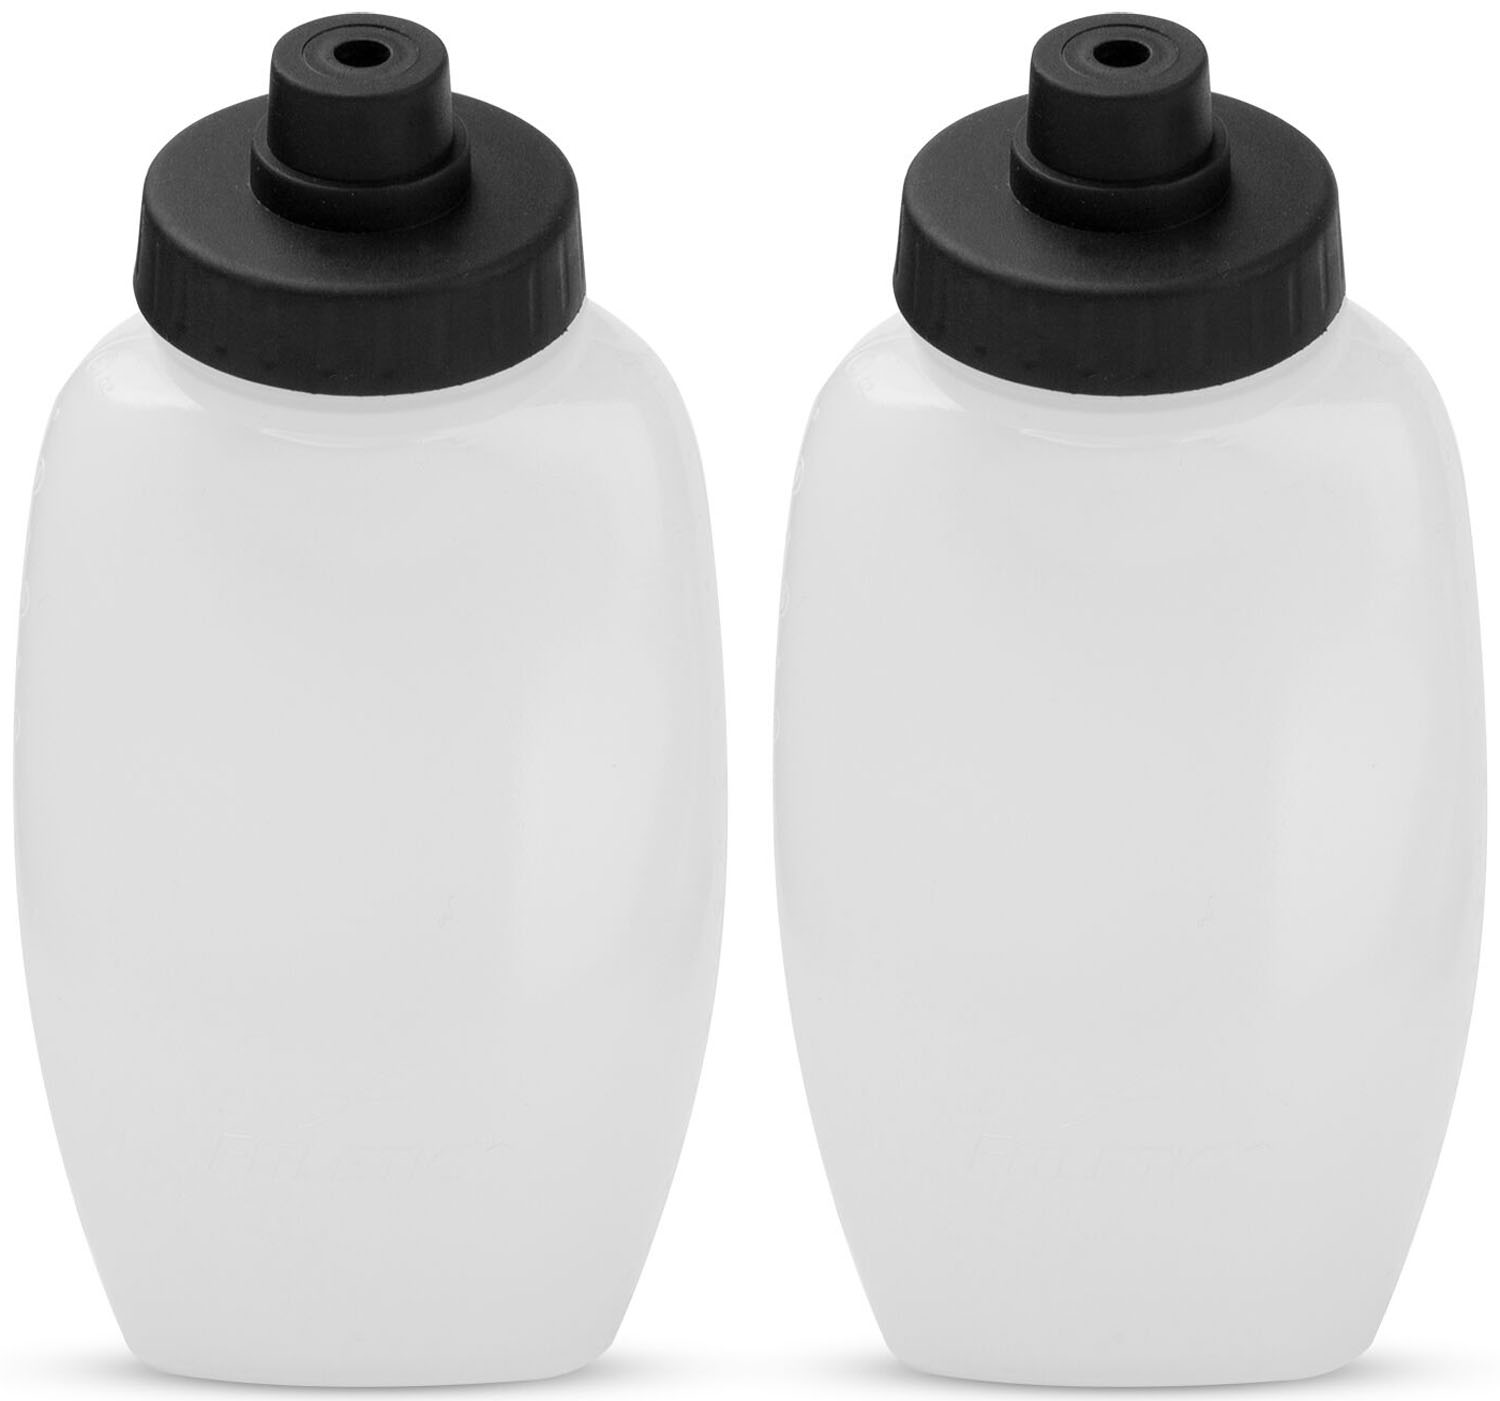 容量：8oz（約240ml）×2独自構造のキャップにより、開閉不要で片手で簡単に水分補給が出来るボトル。コストパフォーマンスに優れた2個組。